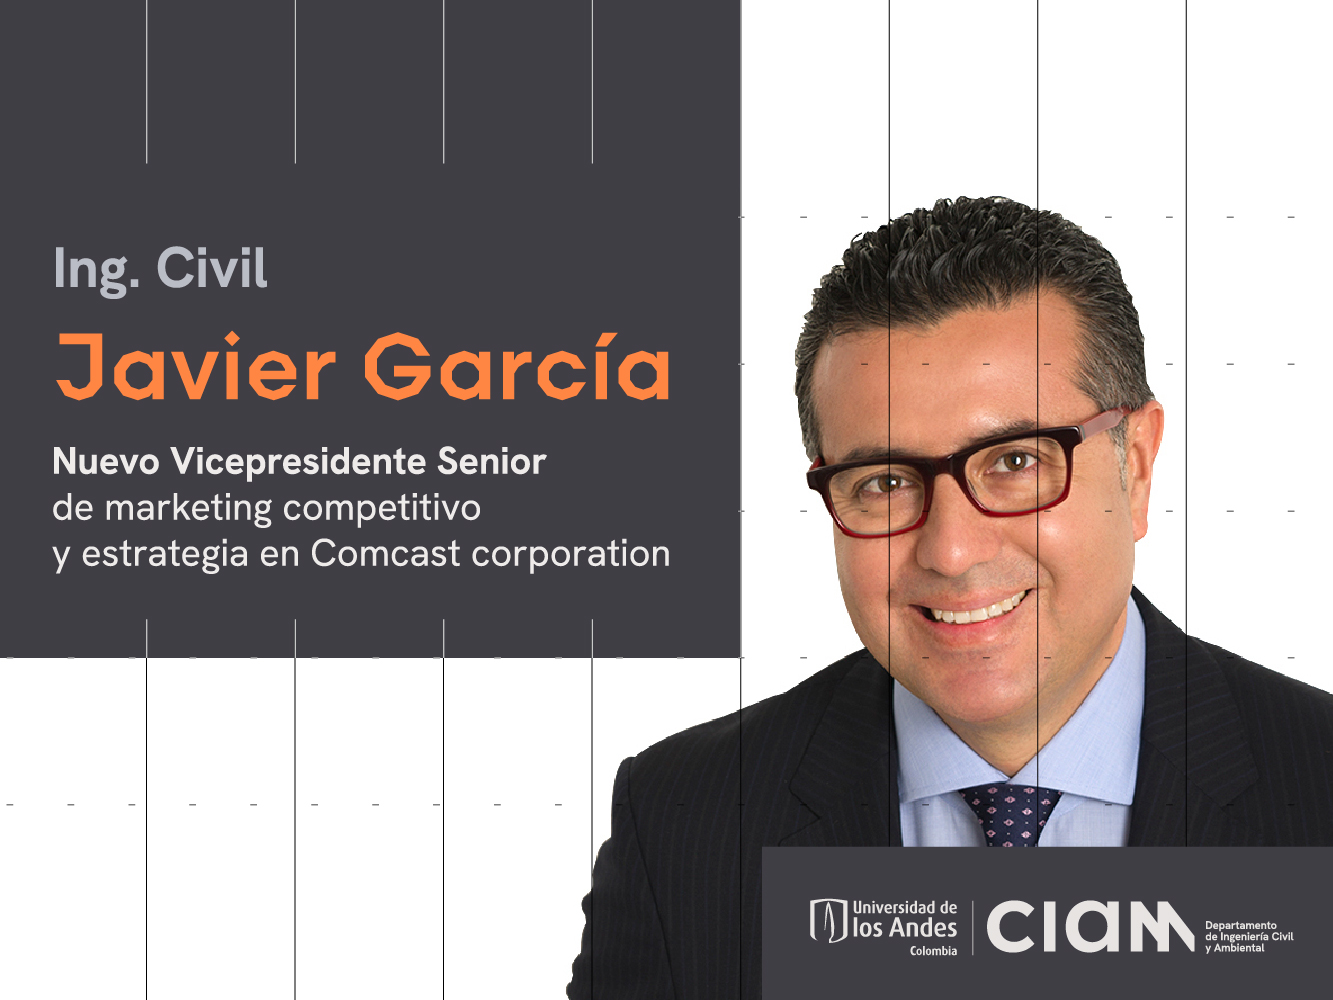 Ing. Civil Javier García Nuevo Vicepresidente Senior de marketing competitivo y estrategia en Comcast corporation